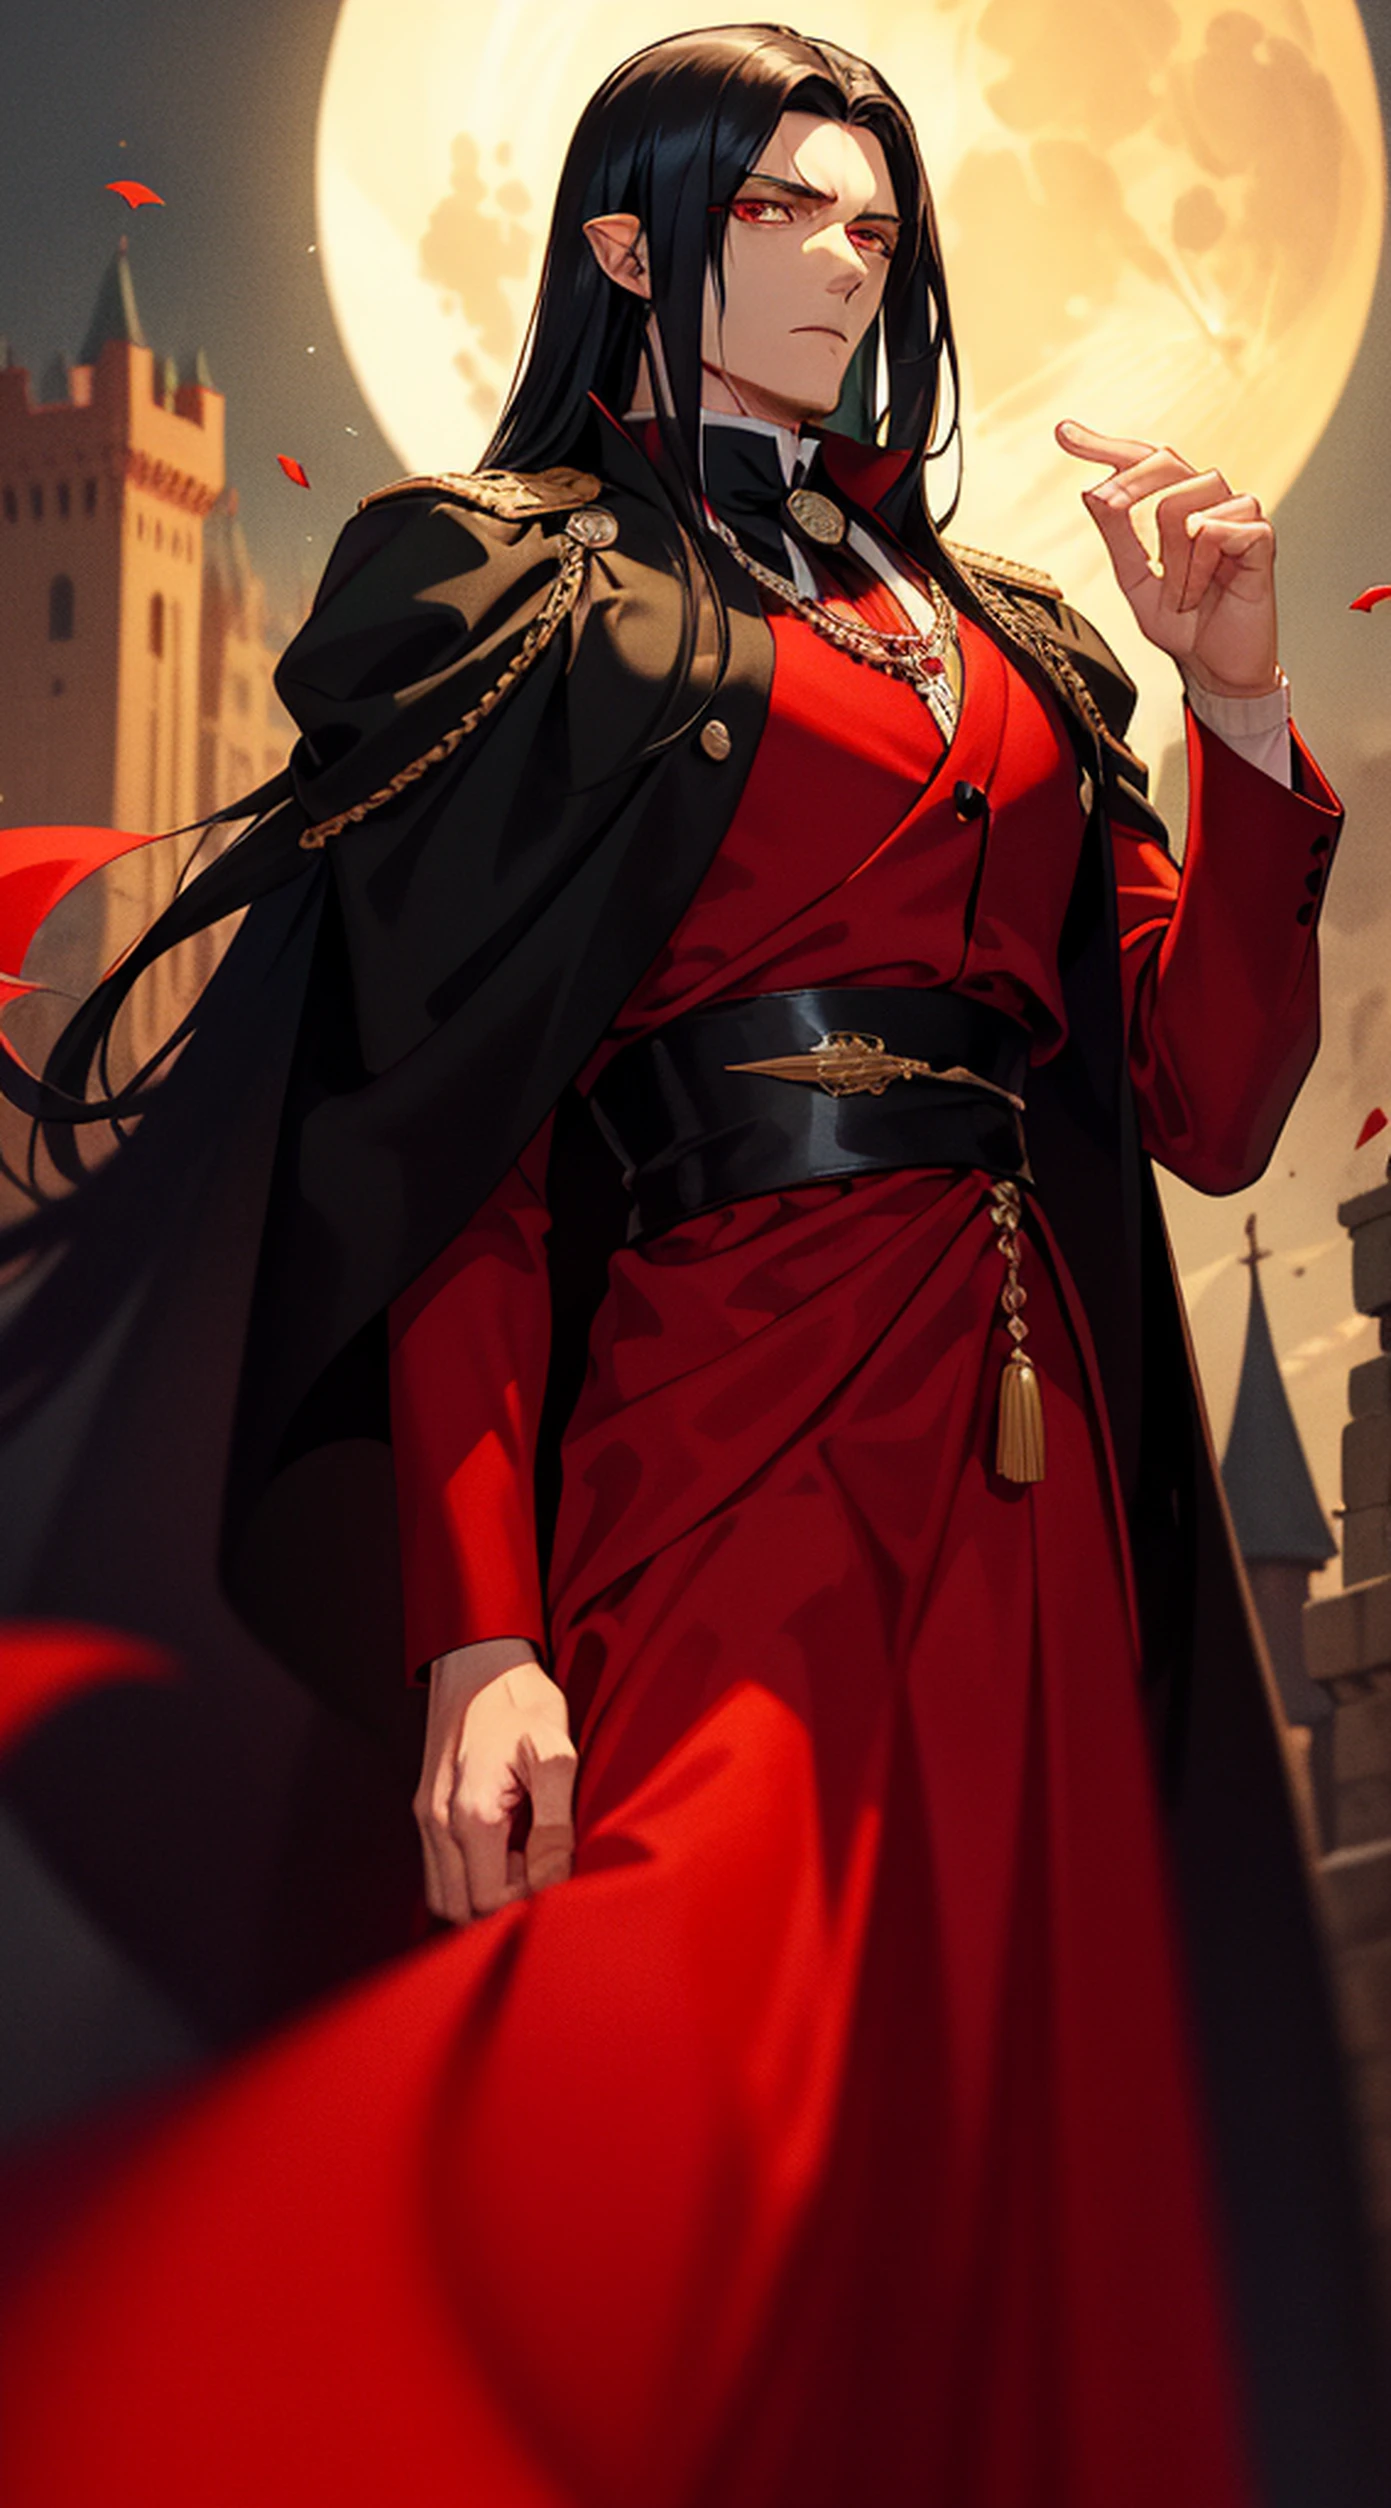 잘생긴 남자, 긴 검은 머리와 붉은 눈을 가진 뱀파이어 왕, 그는 갈색 가운을 입고 빨간색과 검은색 옷을 입는다. (세나리우스 왕성에서의 피묻은 달밤)